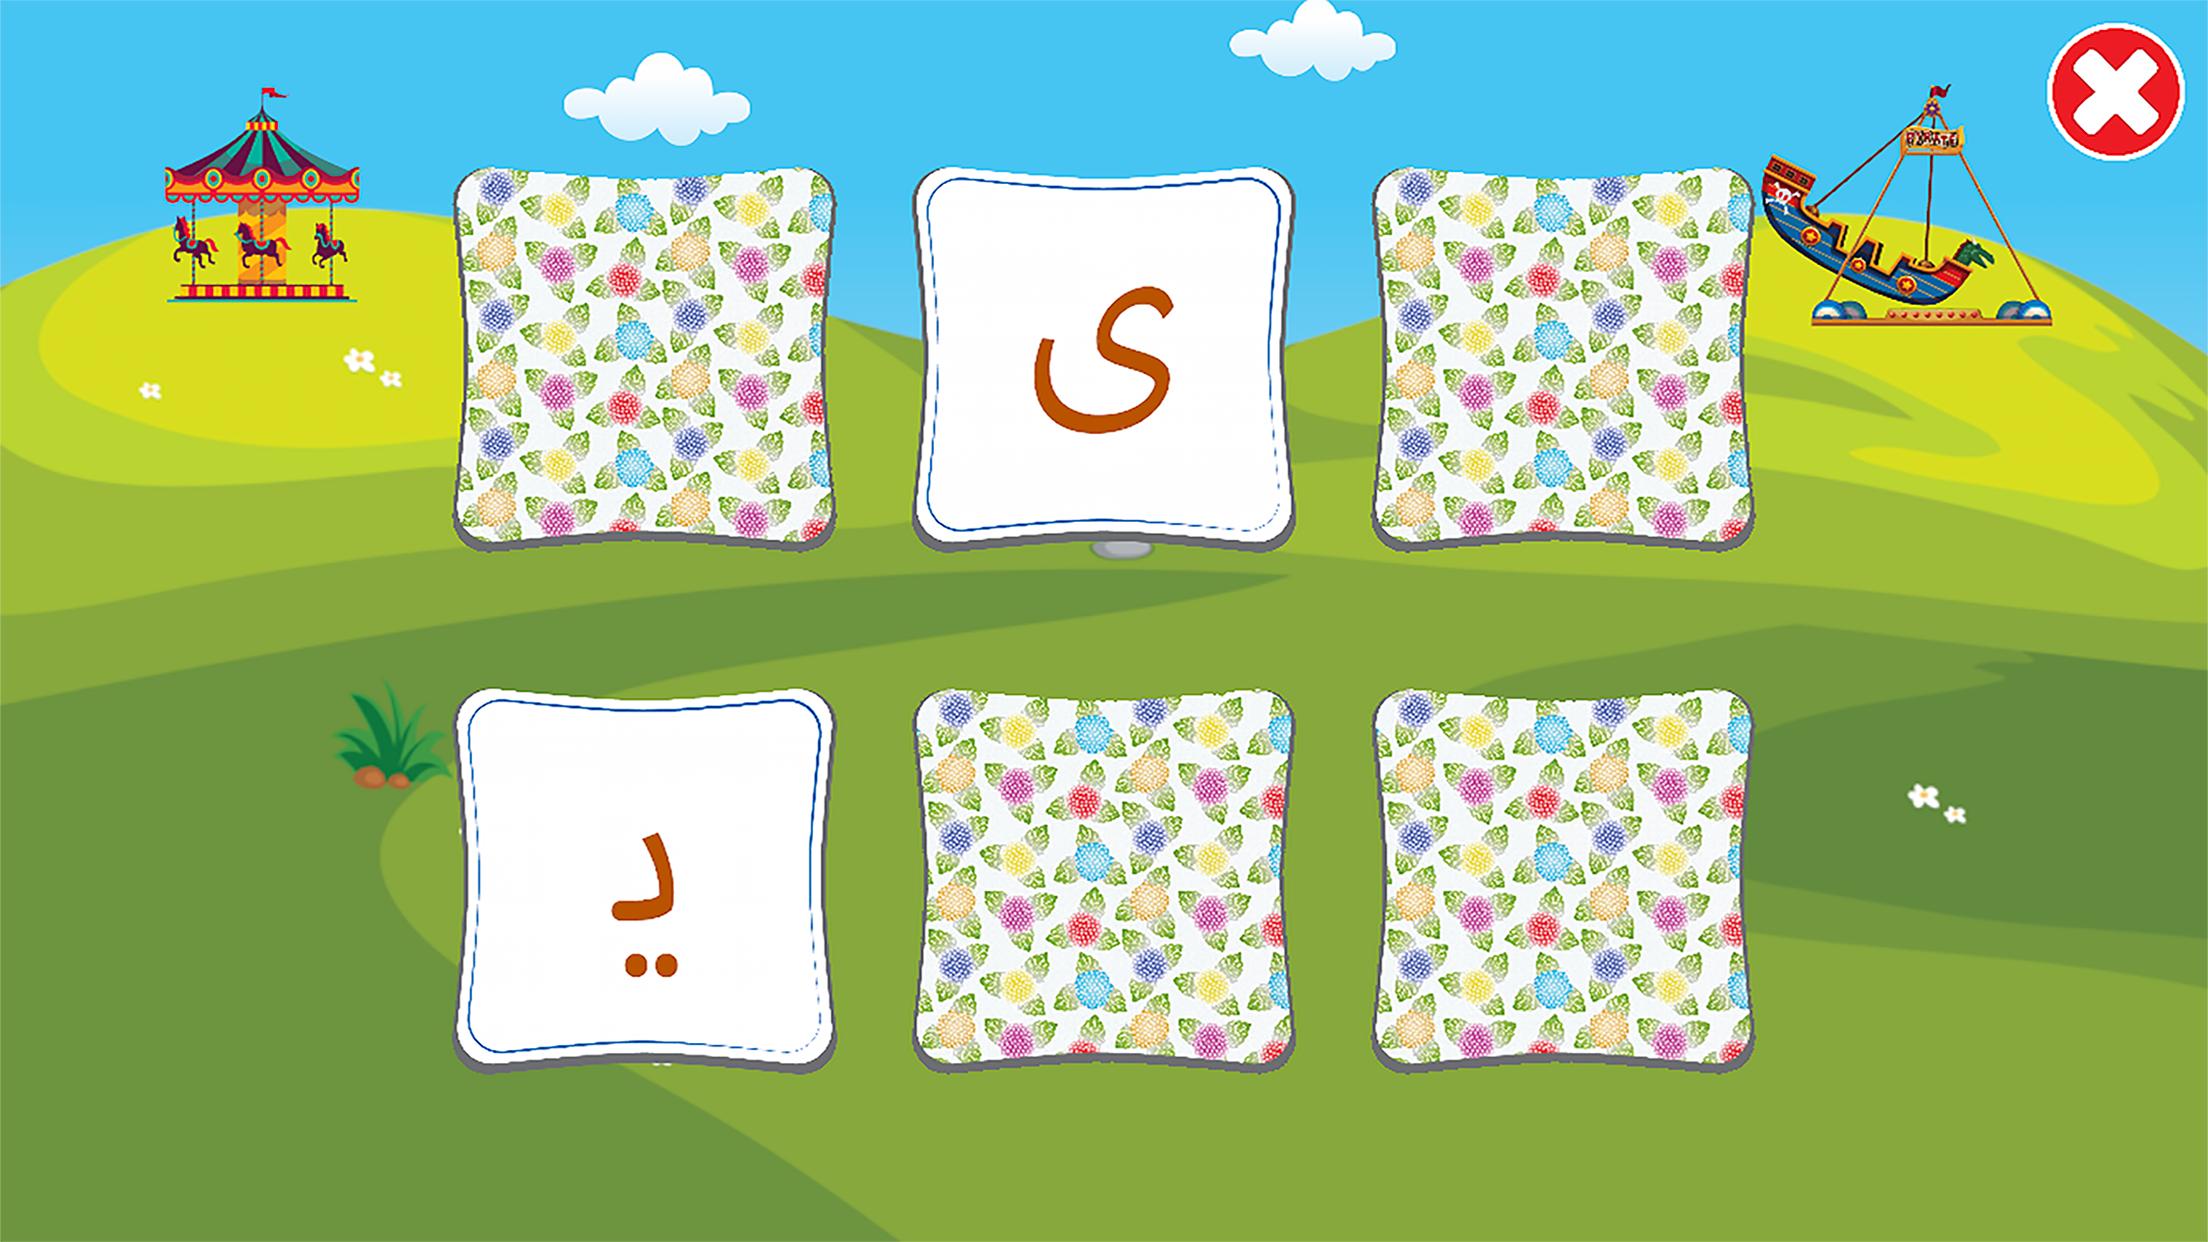 الفبای فارسی کودکان (Farsi alphabet game) 1.11.2 Screenshot 6